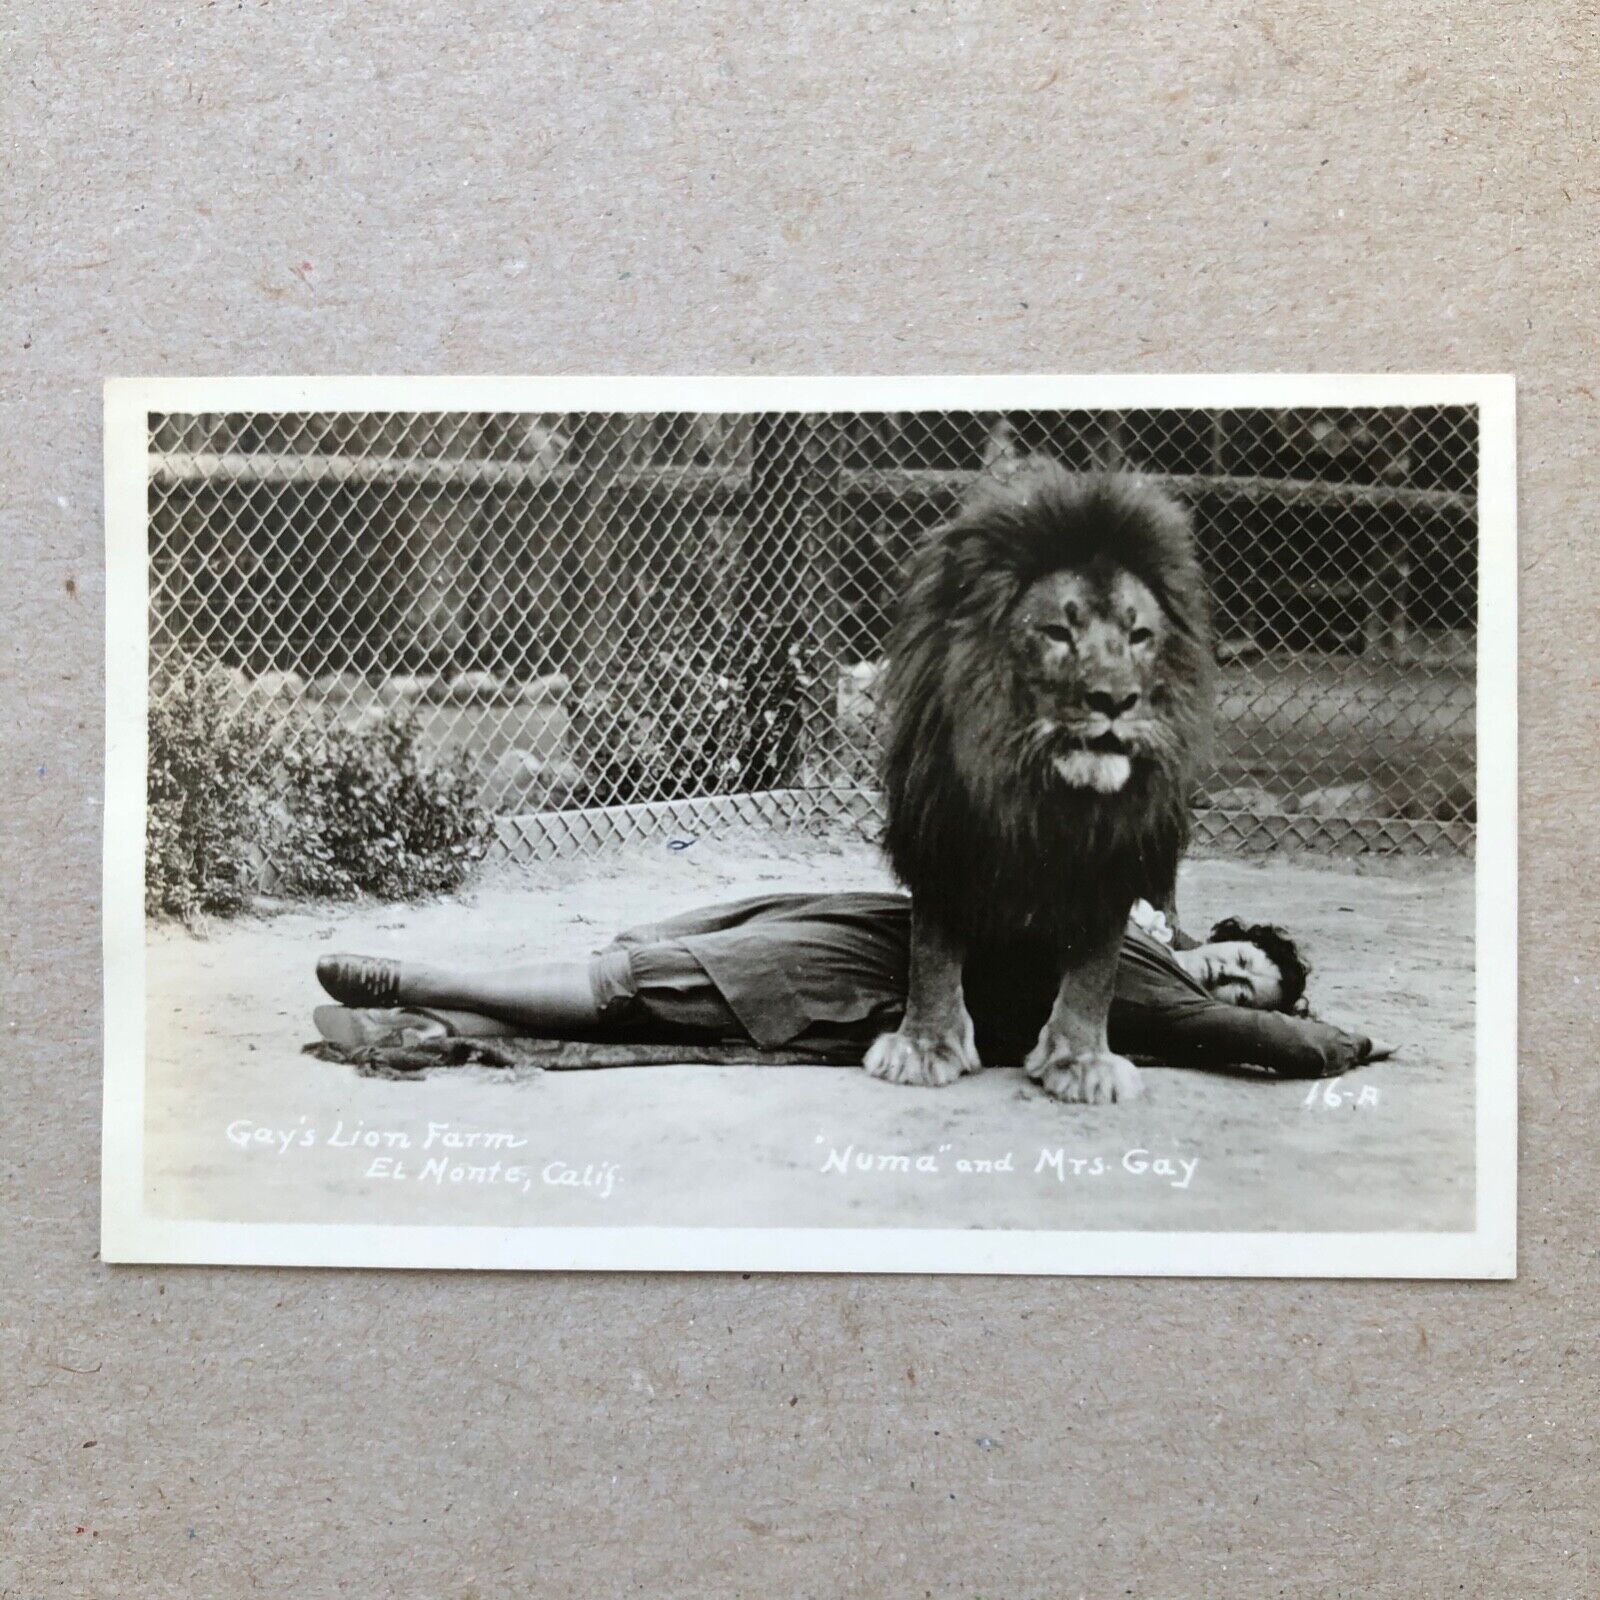 Gay's Lion Farm El Monte, CA Numa and Mrs. Gay RPPC Vintage Postcard K